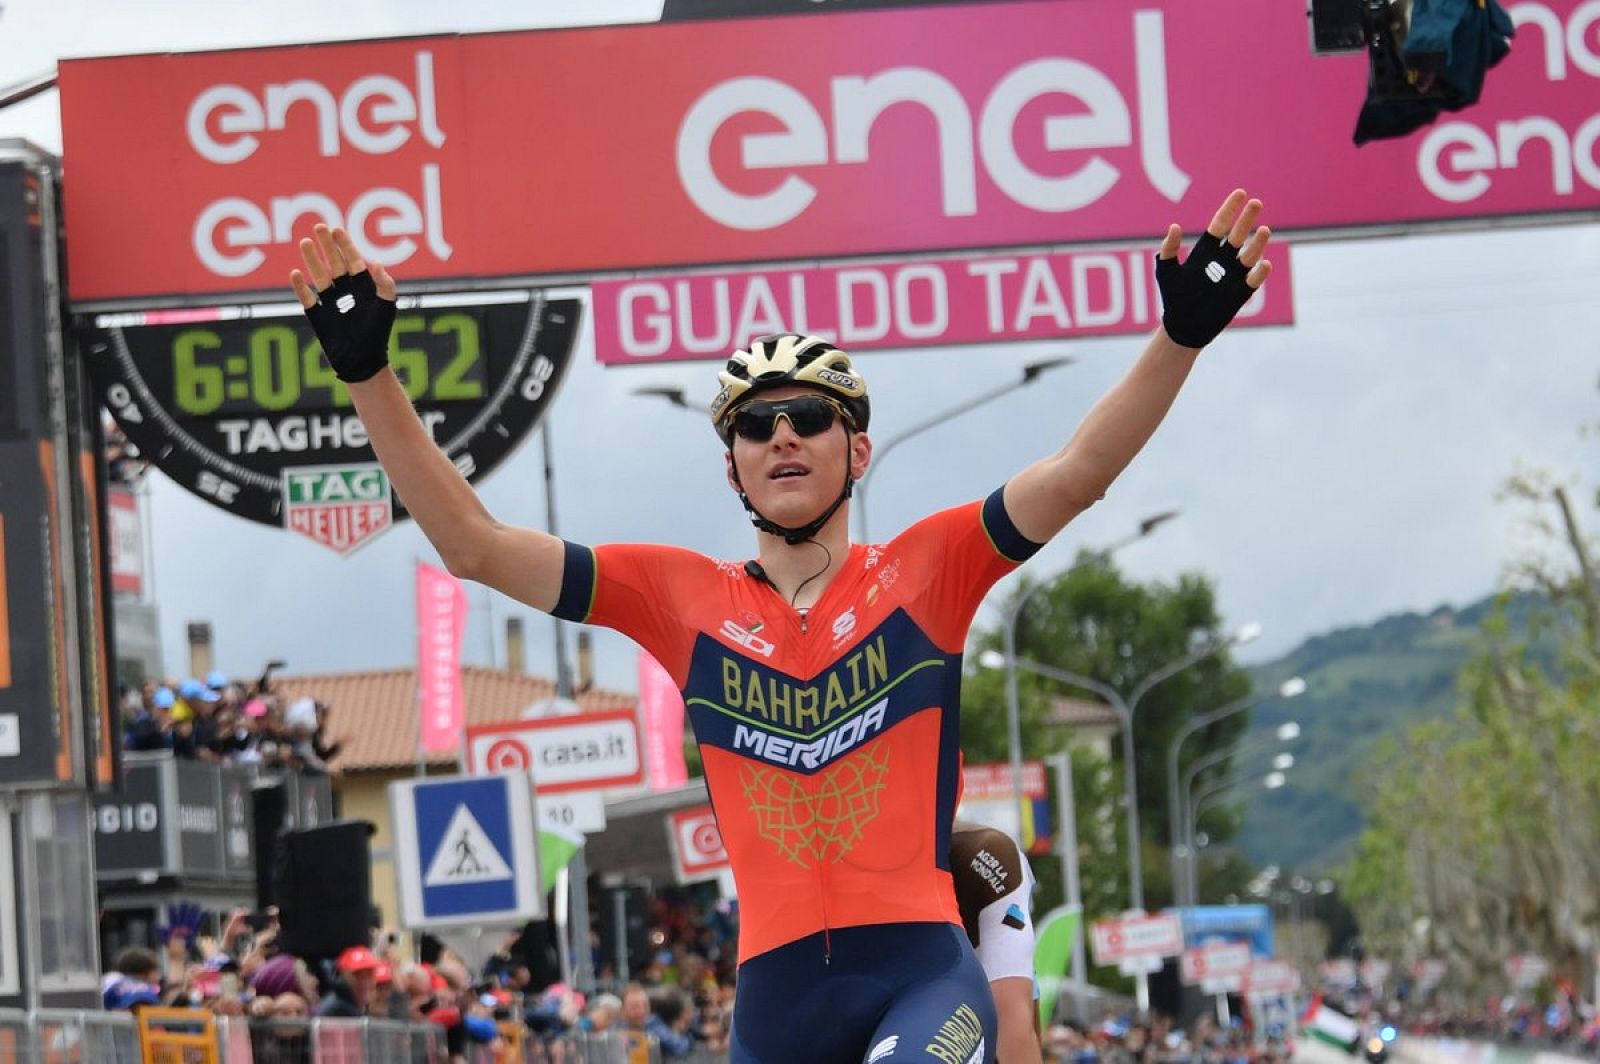 El esloveno Metej Mohoric (Bahrain) se impuso en la décima etapa del Giro de Italia.